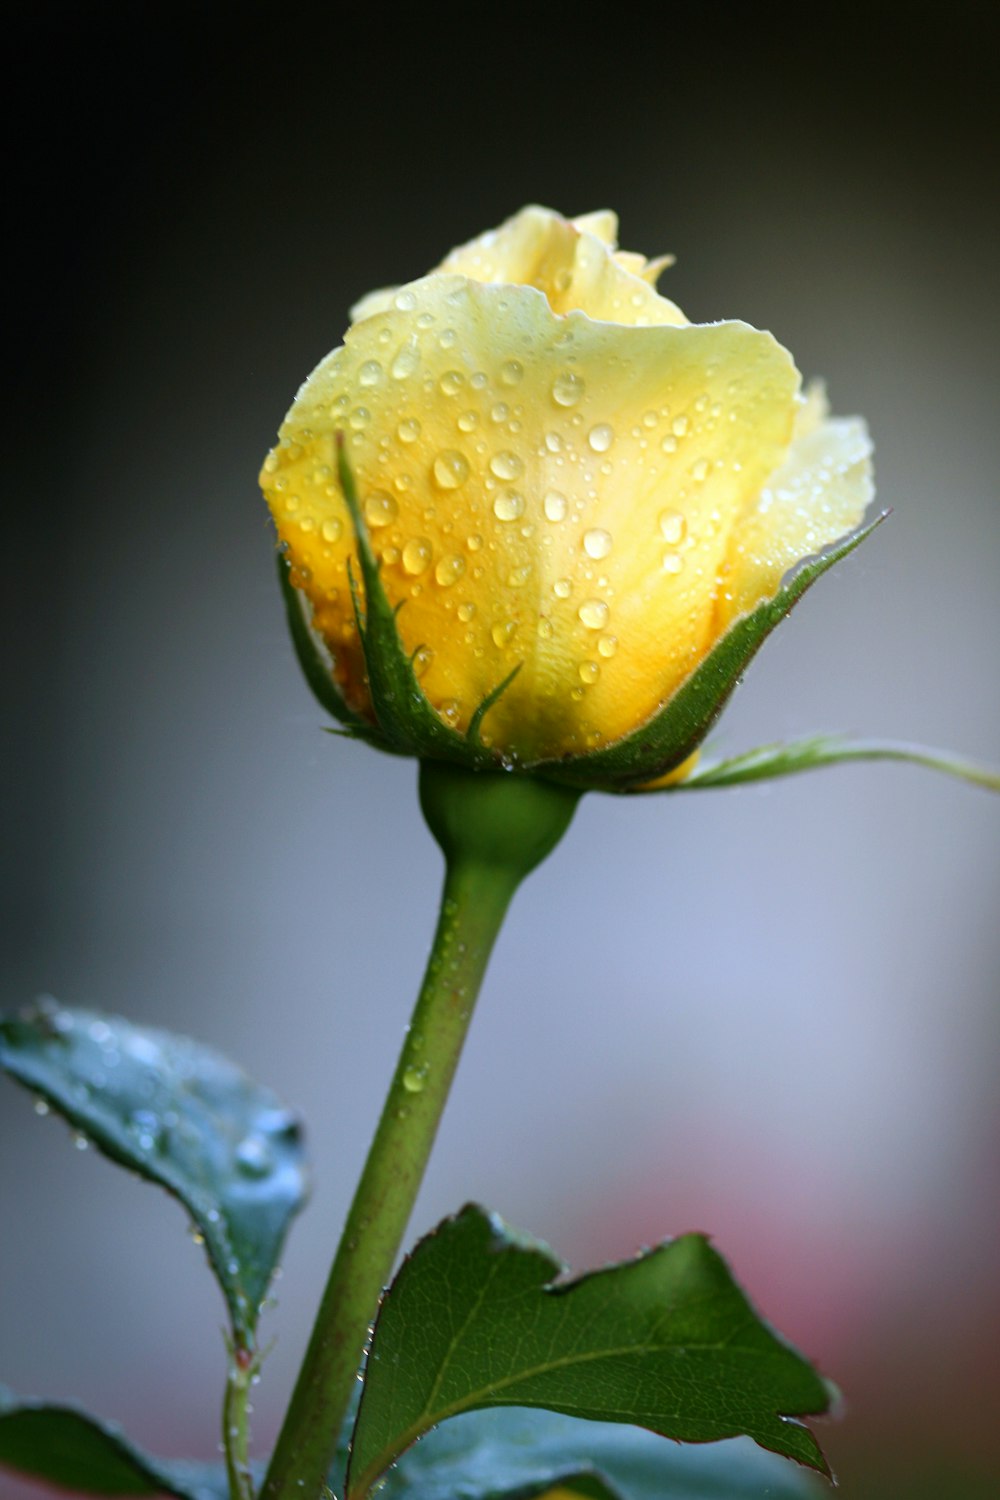 fotografia em close-up da flor amarela da rosa